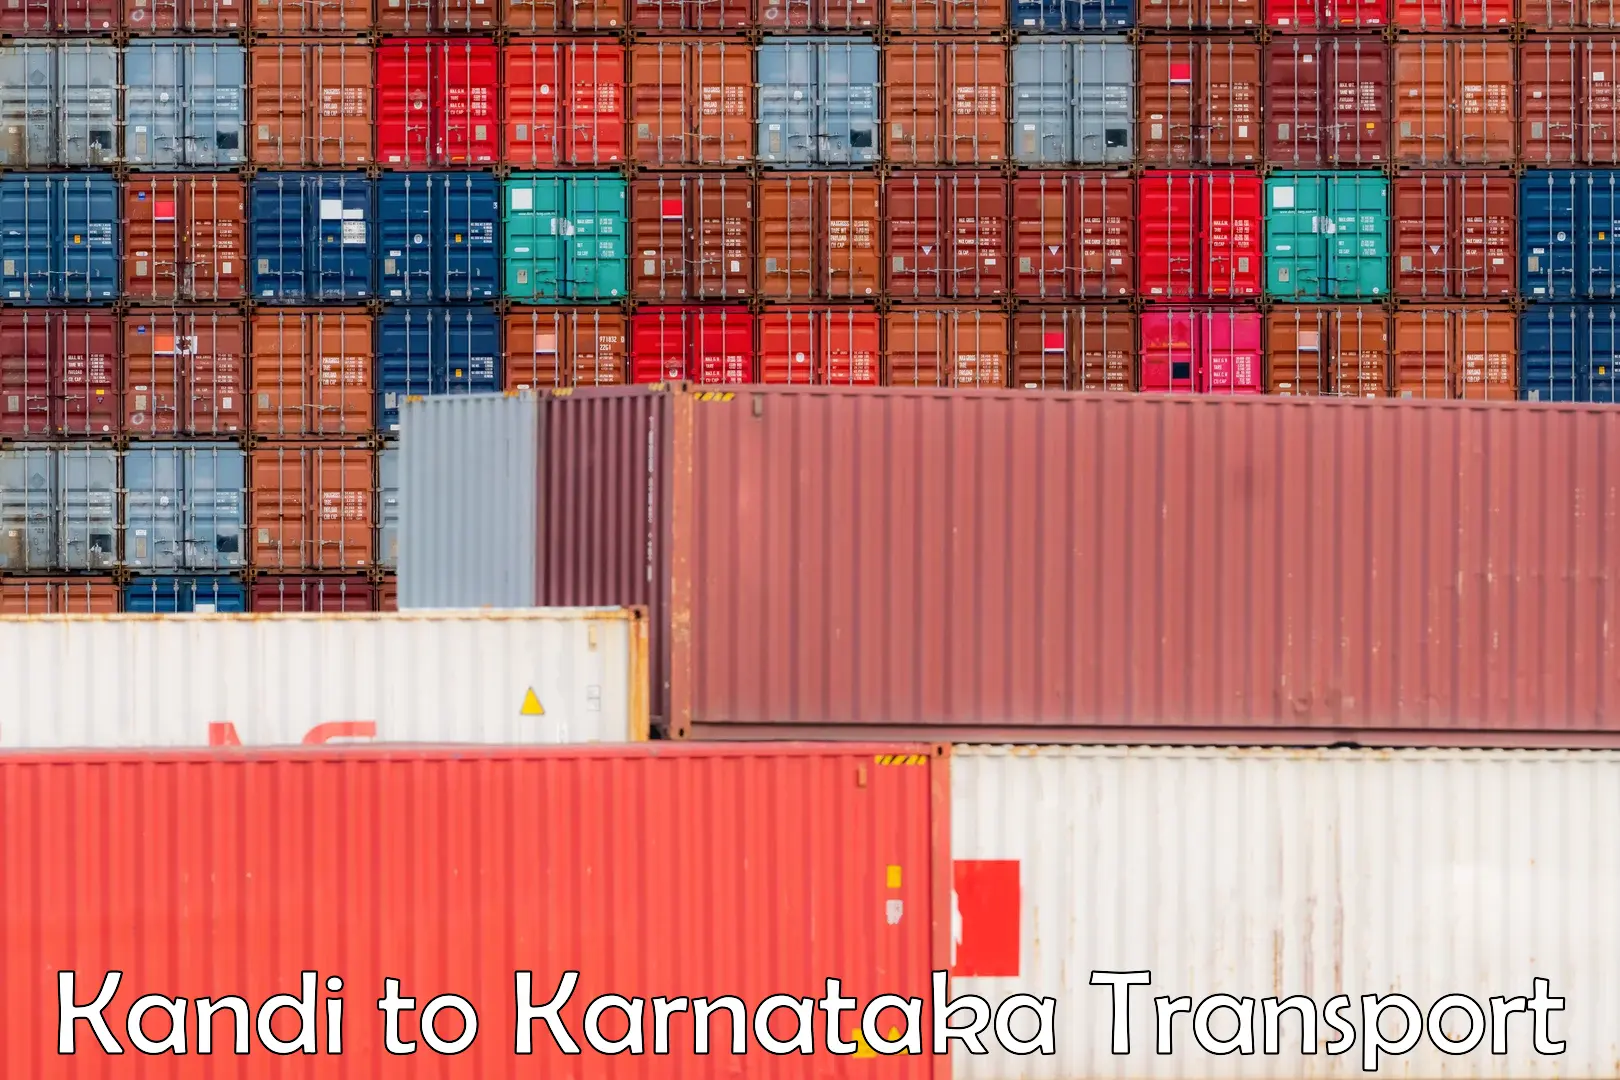 Nearby transport service Kandi to Karnataka